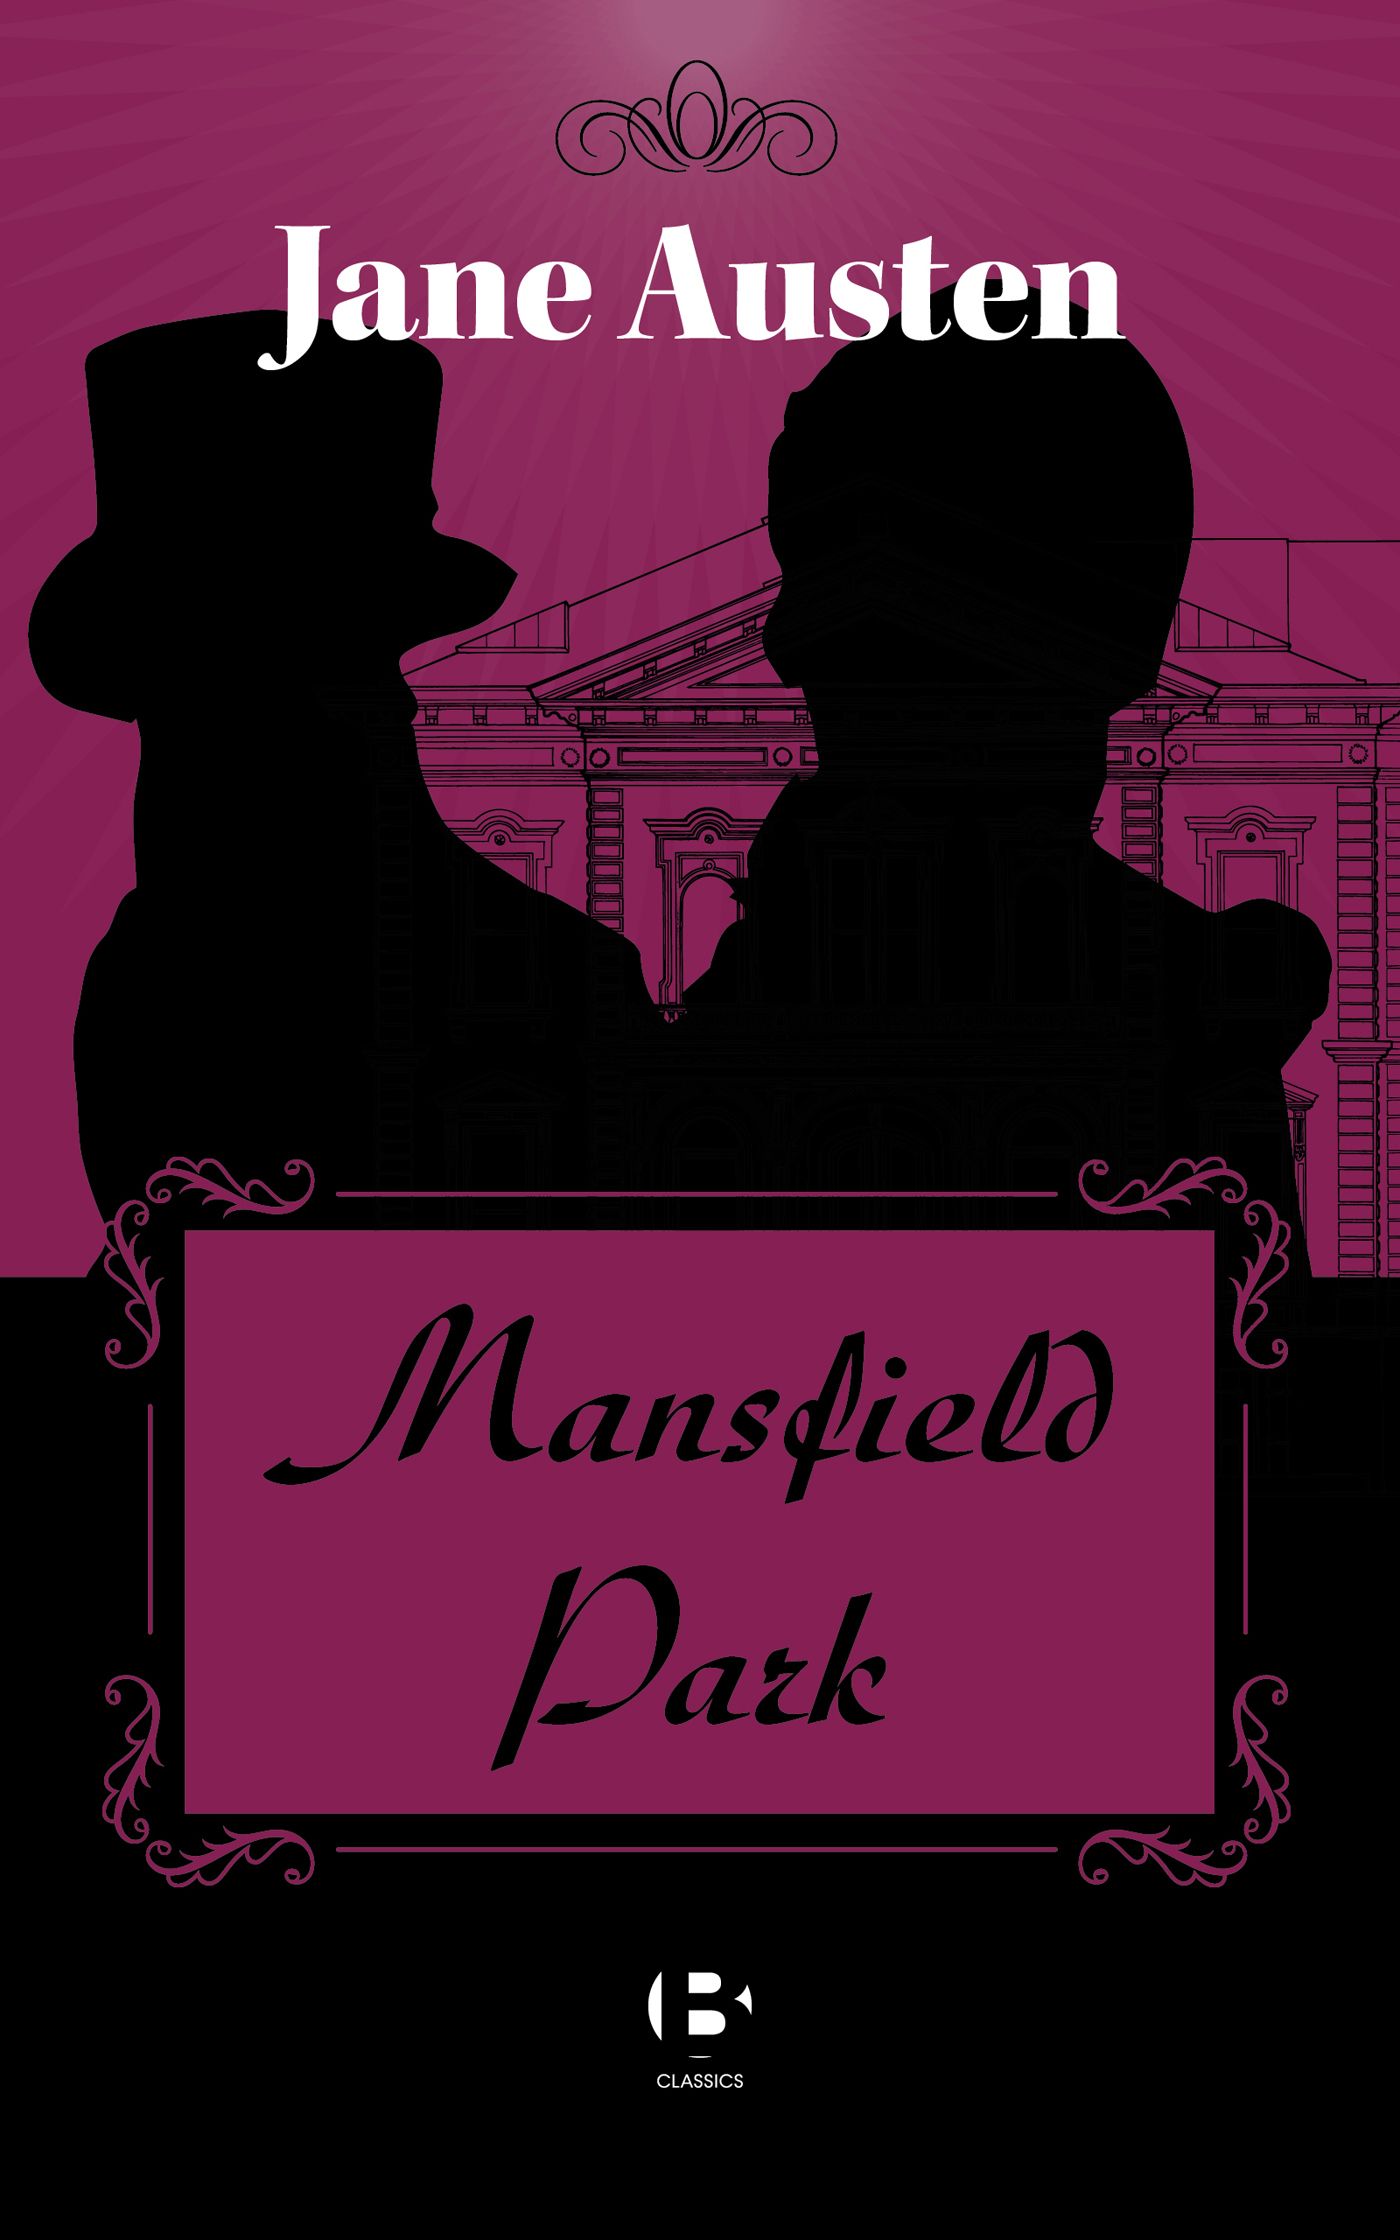 Mansfield Park, eBook by Jane Austen